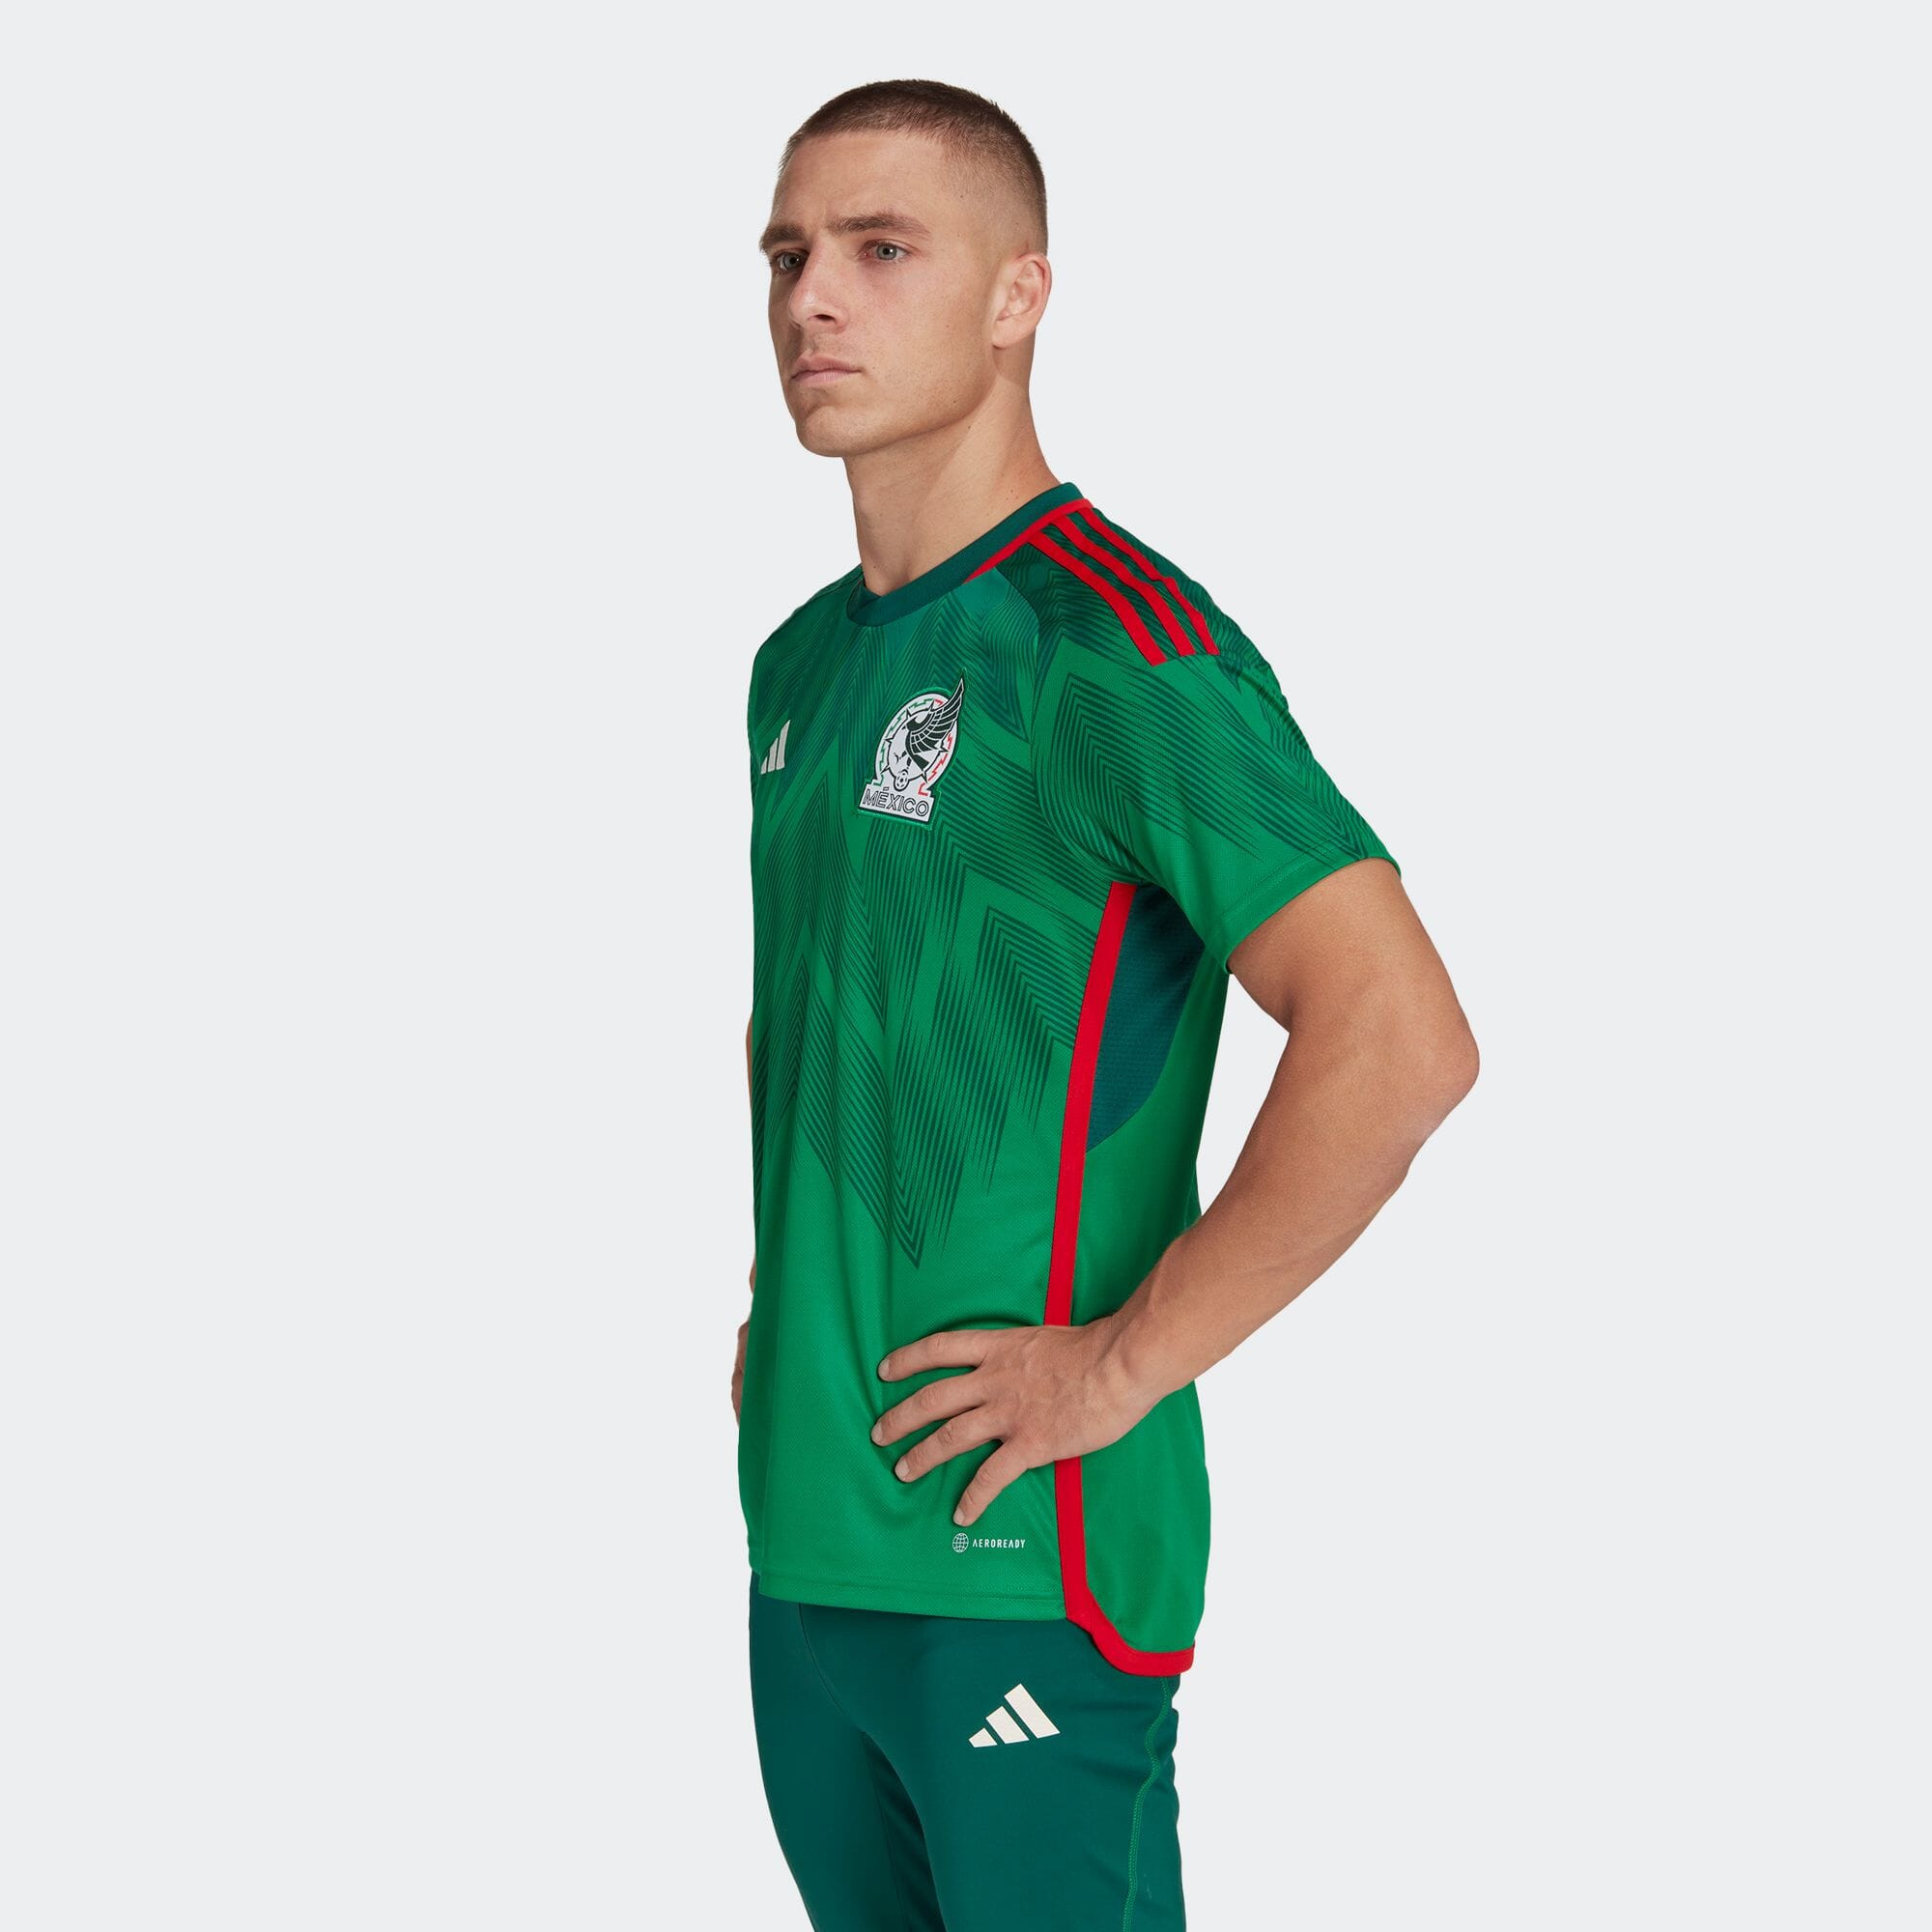 メキシコ代表 22 ホームユニフォーム メンズ サッカー|フットサル